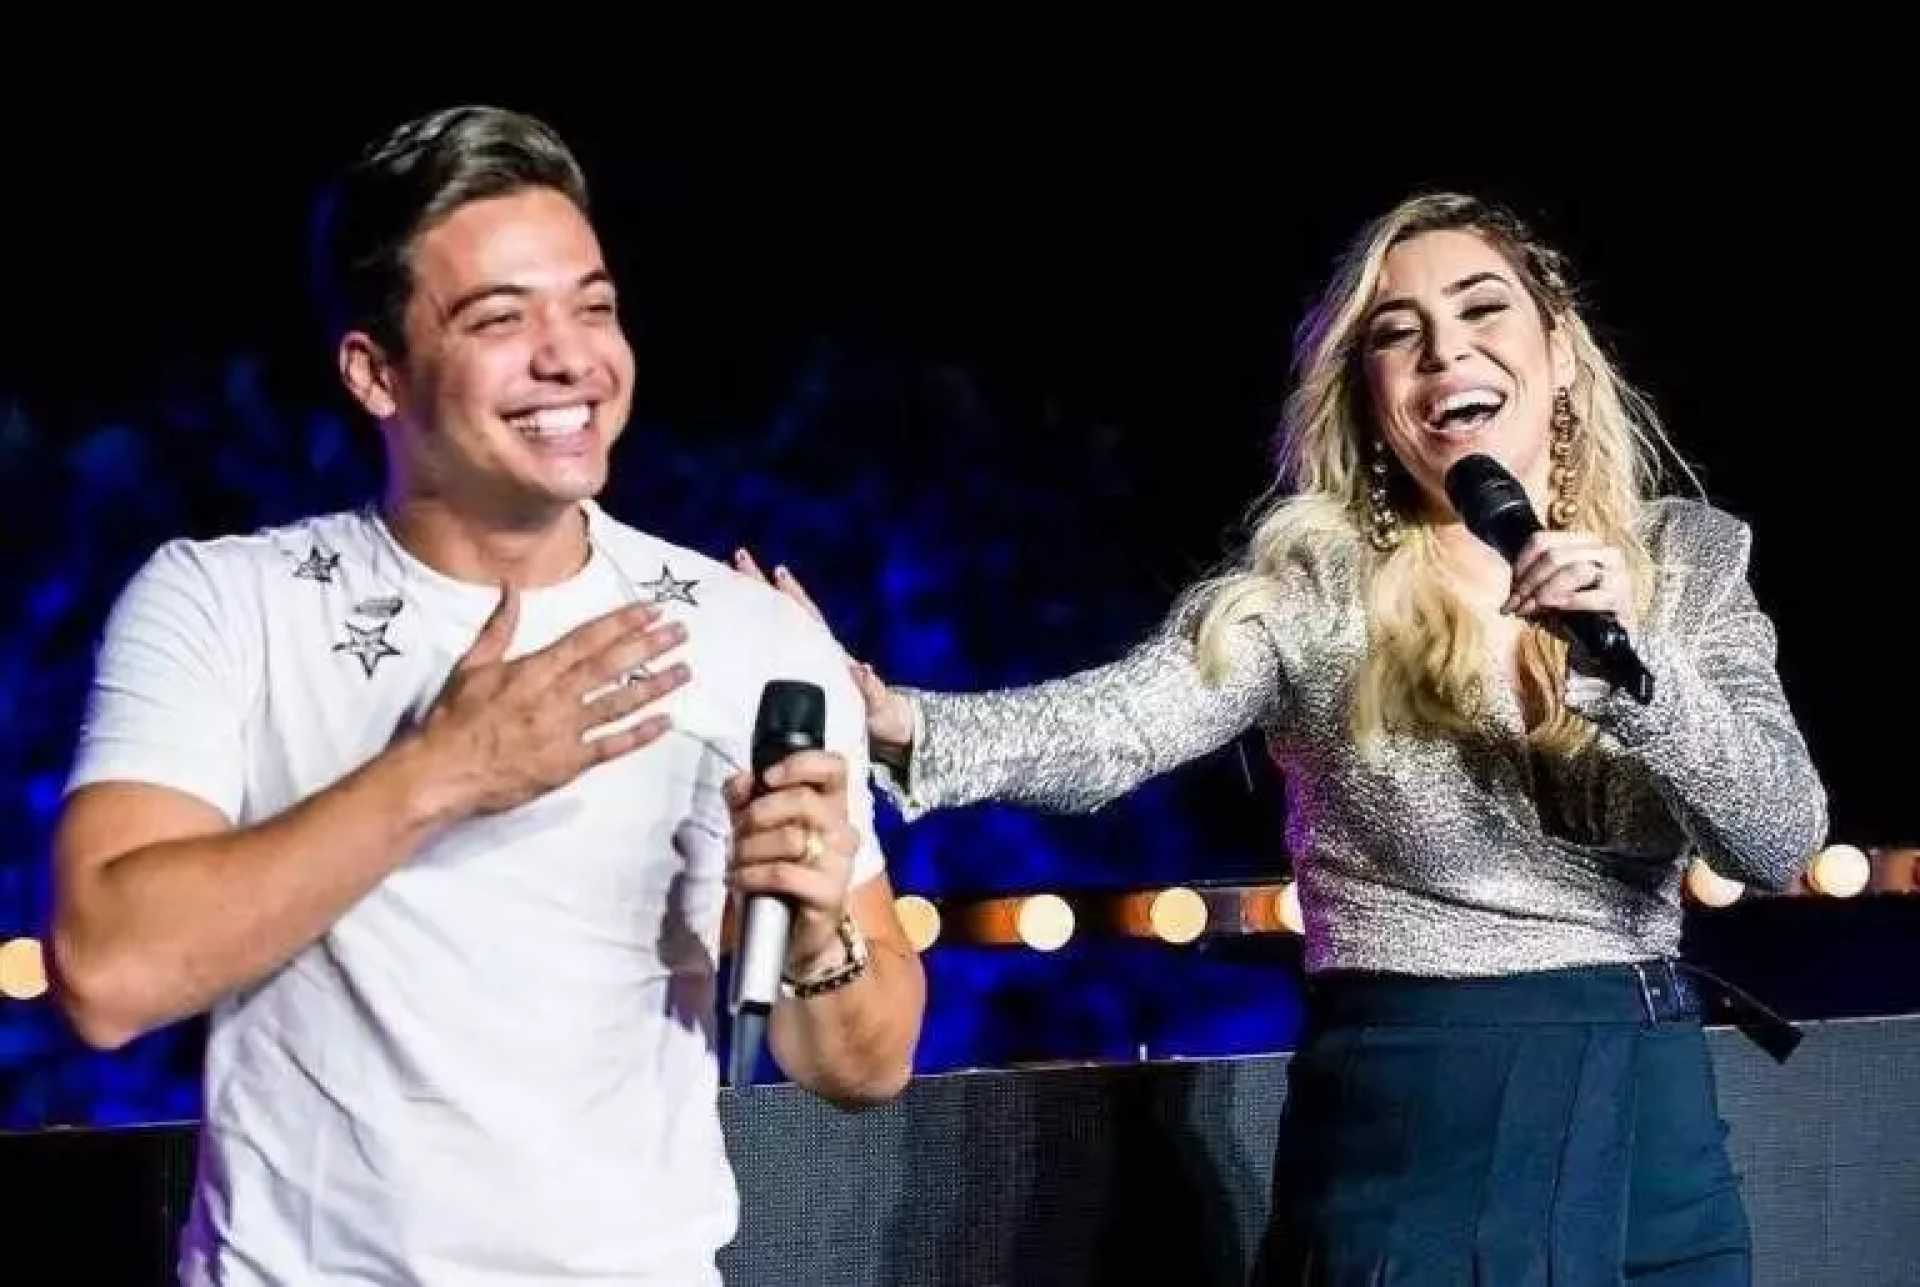 Wesley Safadão saiu em defesa da cantora Naiara Azevedo no Twitter. O cantor aproveitou ainda para alfinetar Rodrigo Mussi. (Foto: Divulgação)